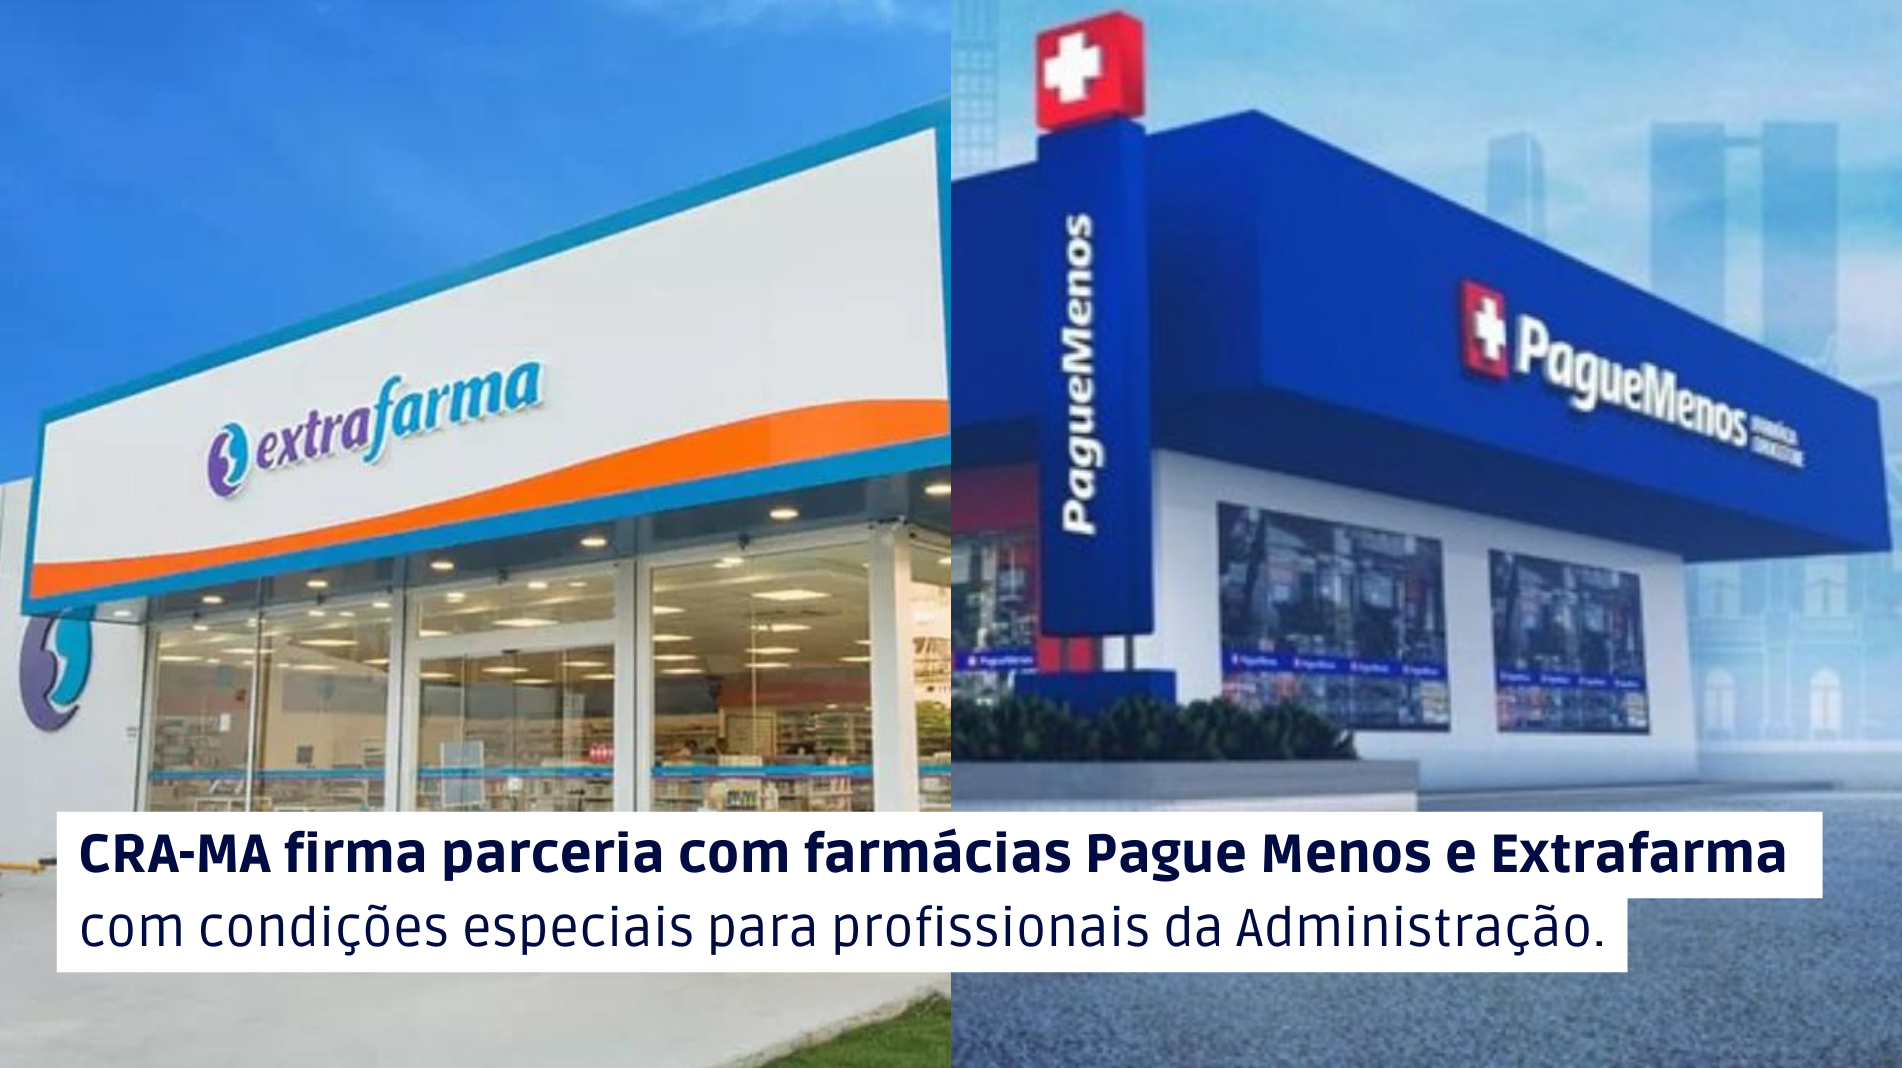 You are currently viewing CRA-MA firma parceria com farmácias Pague Menos e Extrafarma com condições especiais para profissionais da Administração.